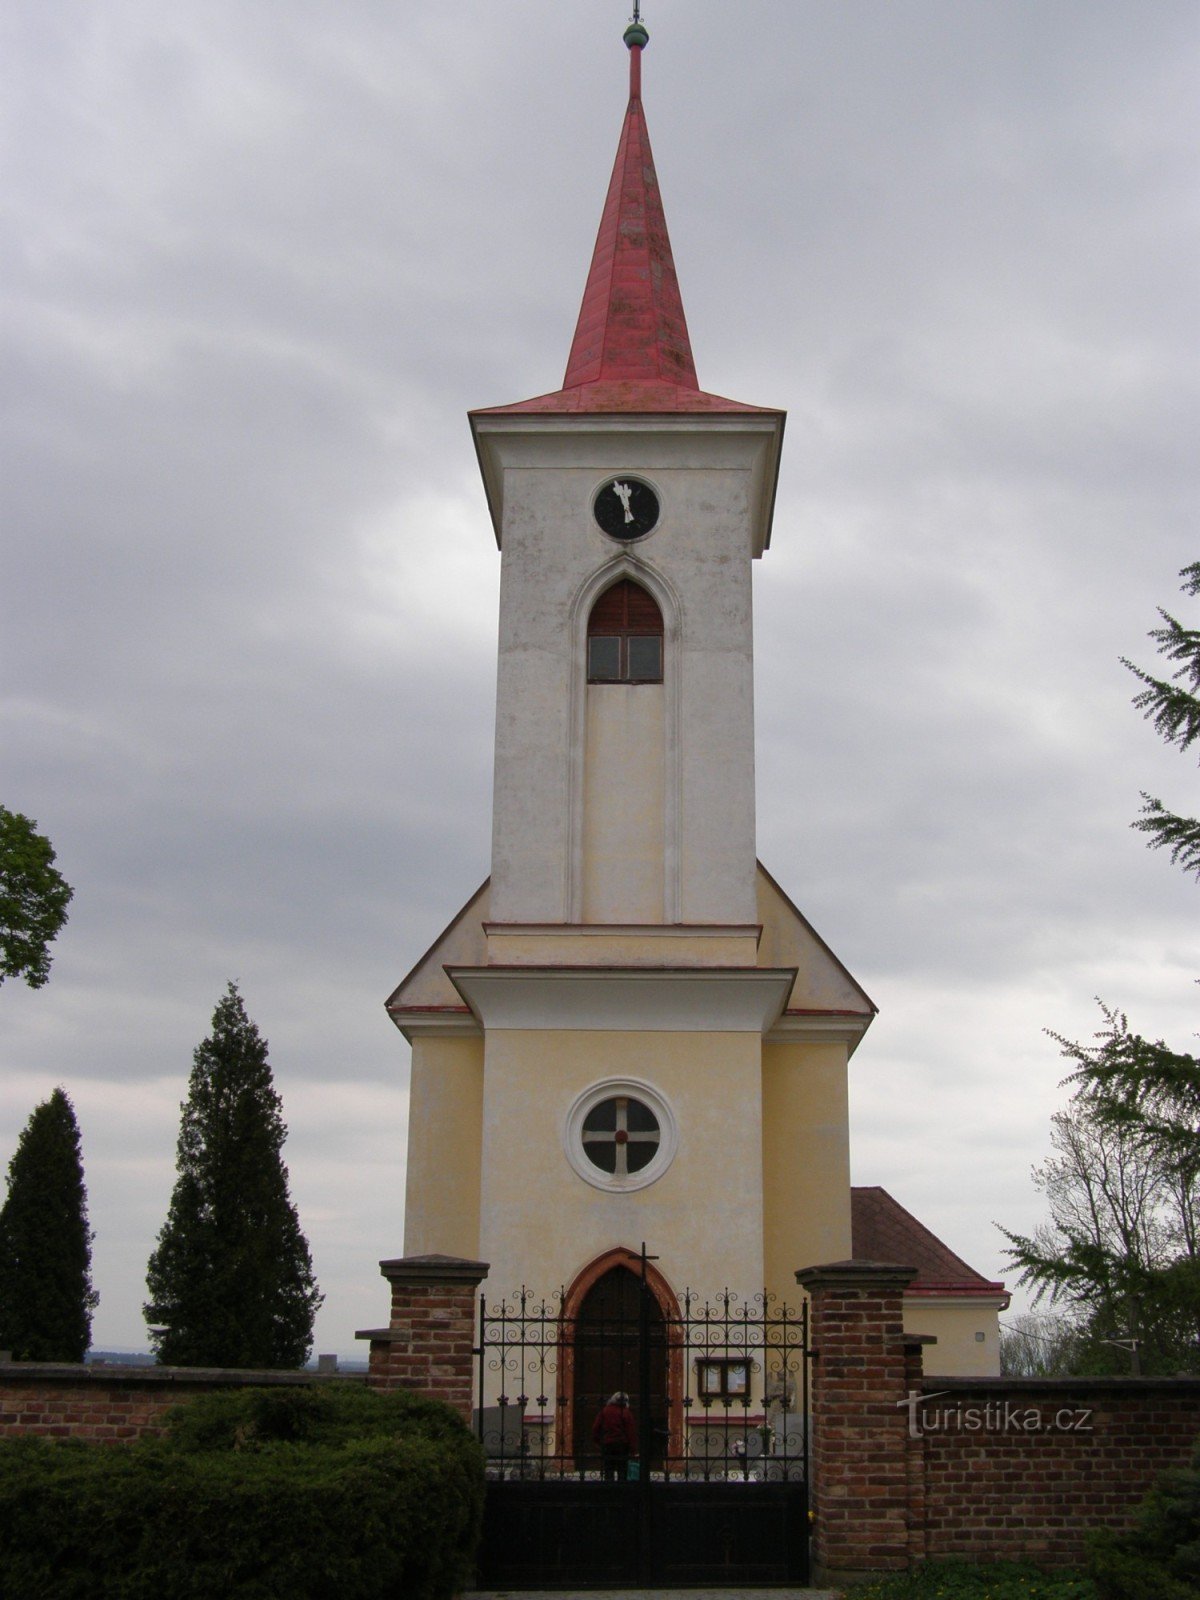 Velichovky - Biserica Schimbarea la Față a Domnului